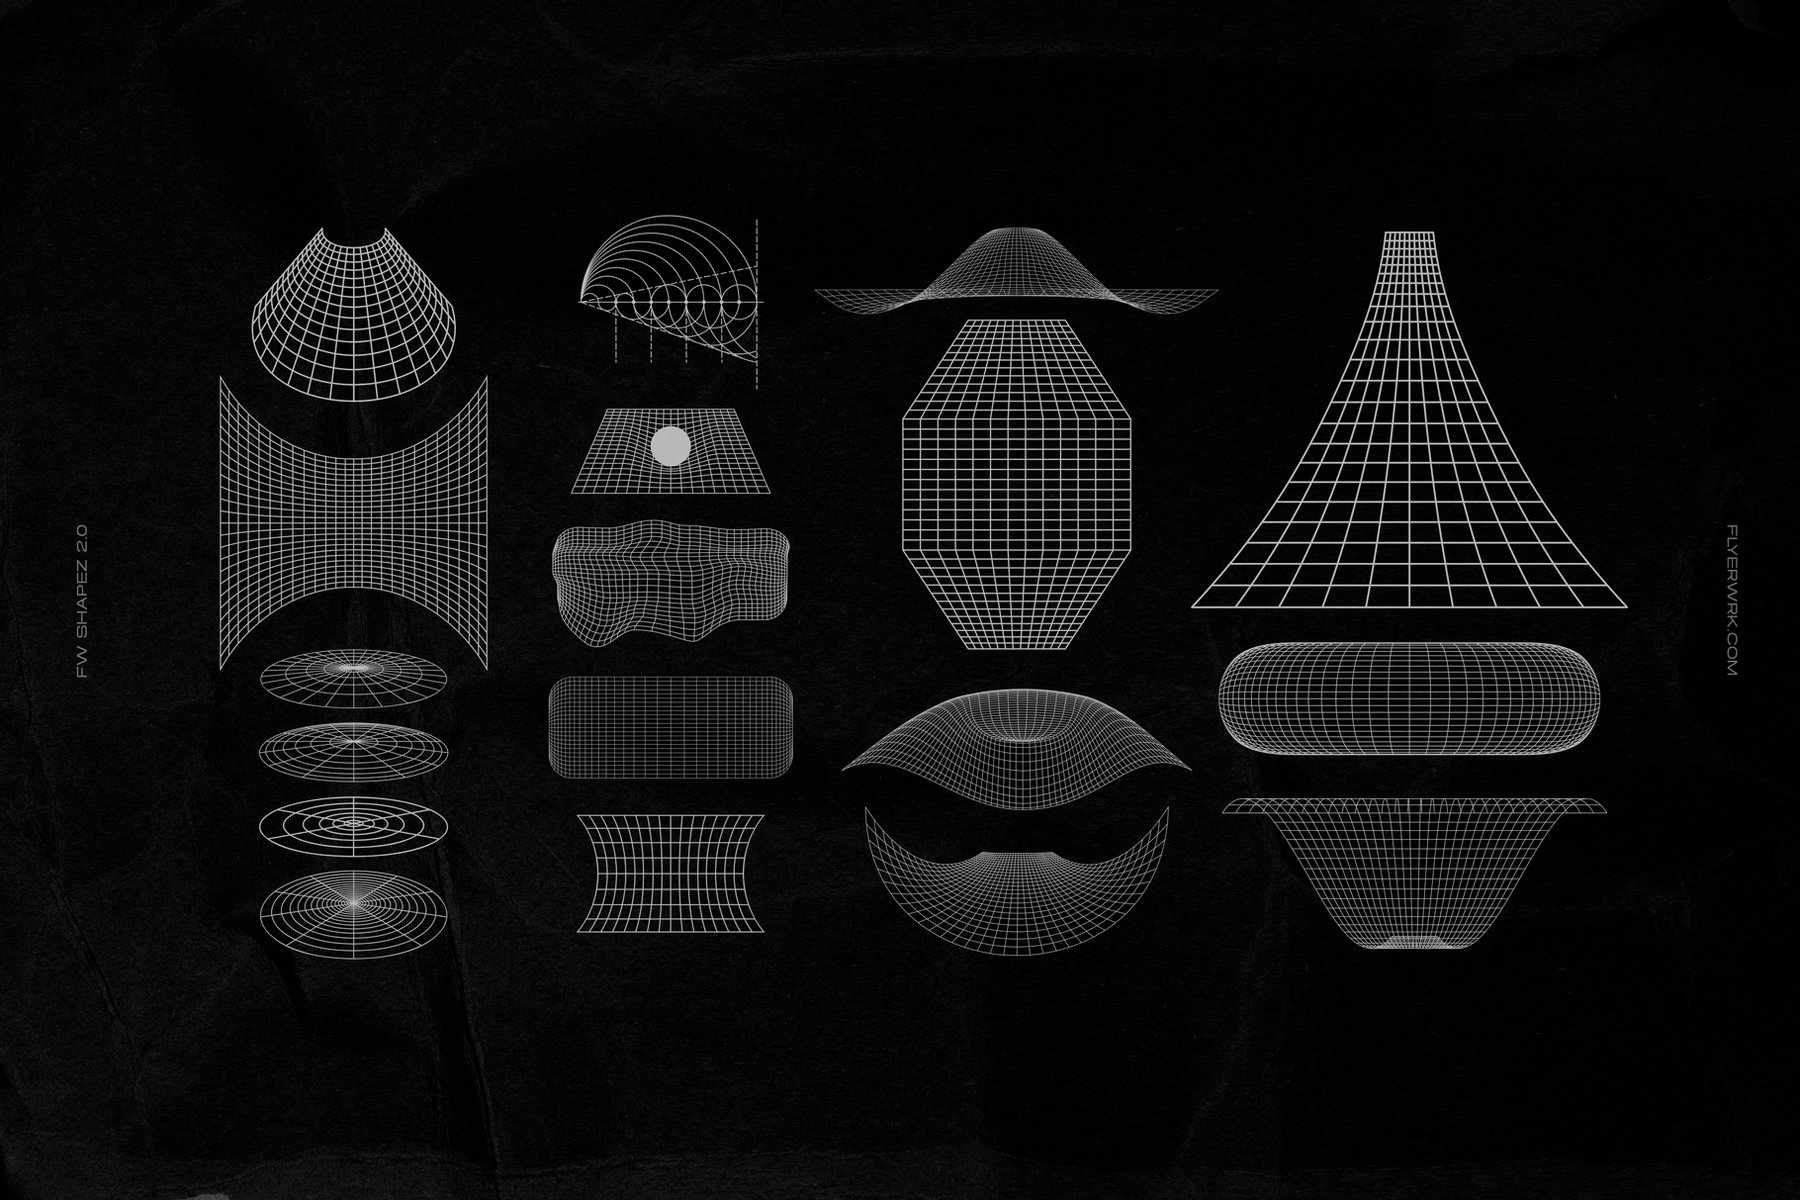 新复古未来派超现实主义科技抽象扭曲几何图形素材 Shapez